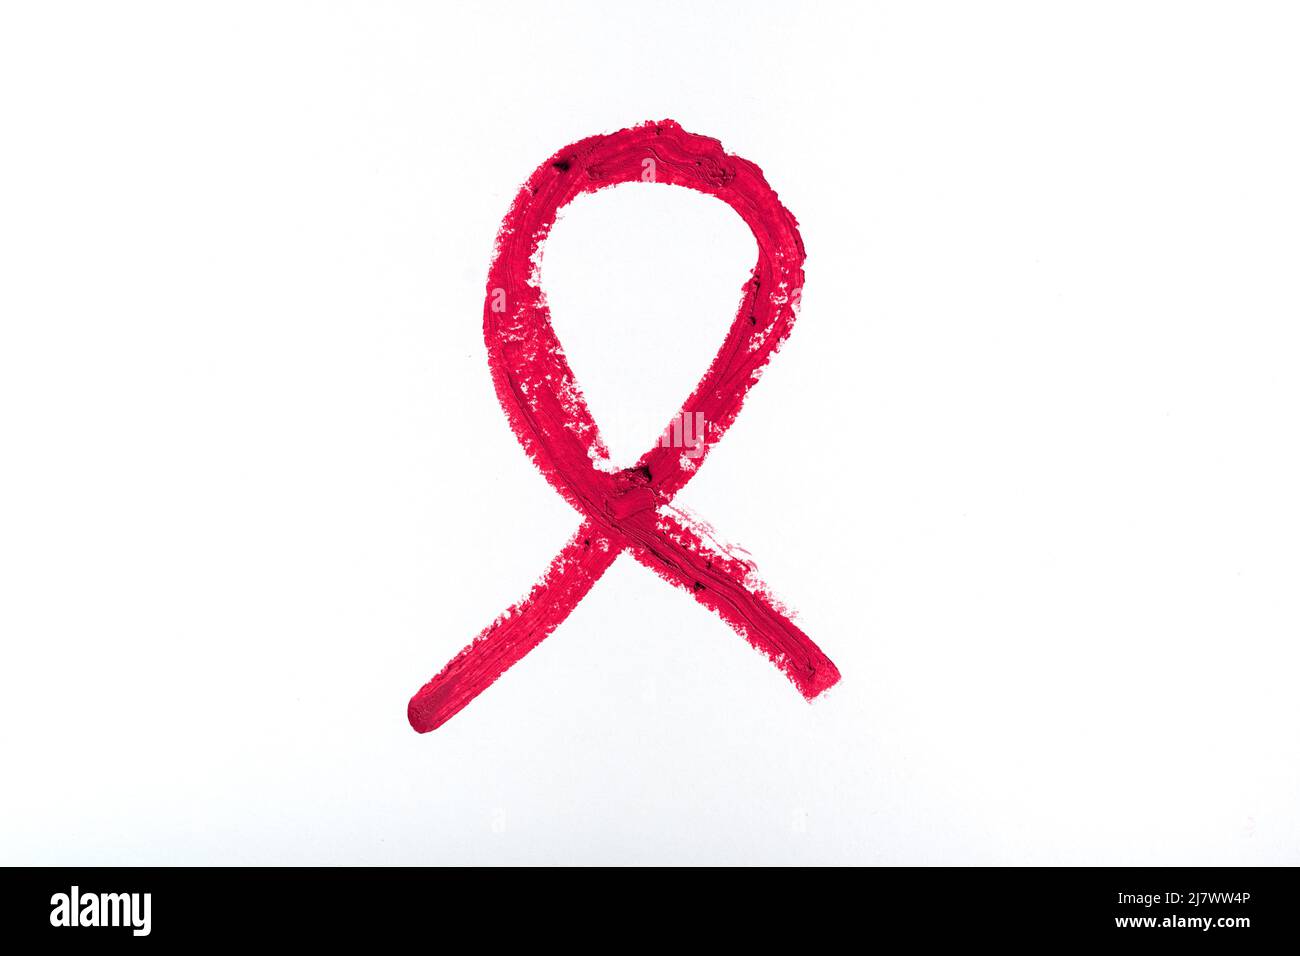 Rossetto rosso come simbolo di solidarietà per le persone che vivono con HIV o AIDS su sfondo bianco. Concetto di Giornata Mondiale dell'AIDS. Foto Stock